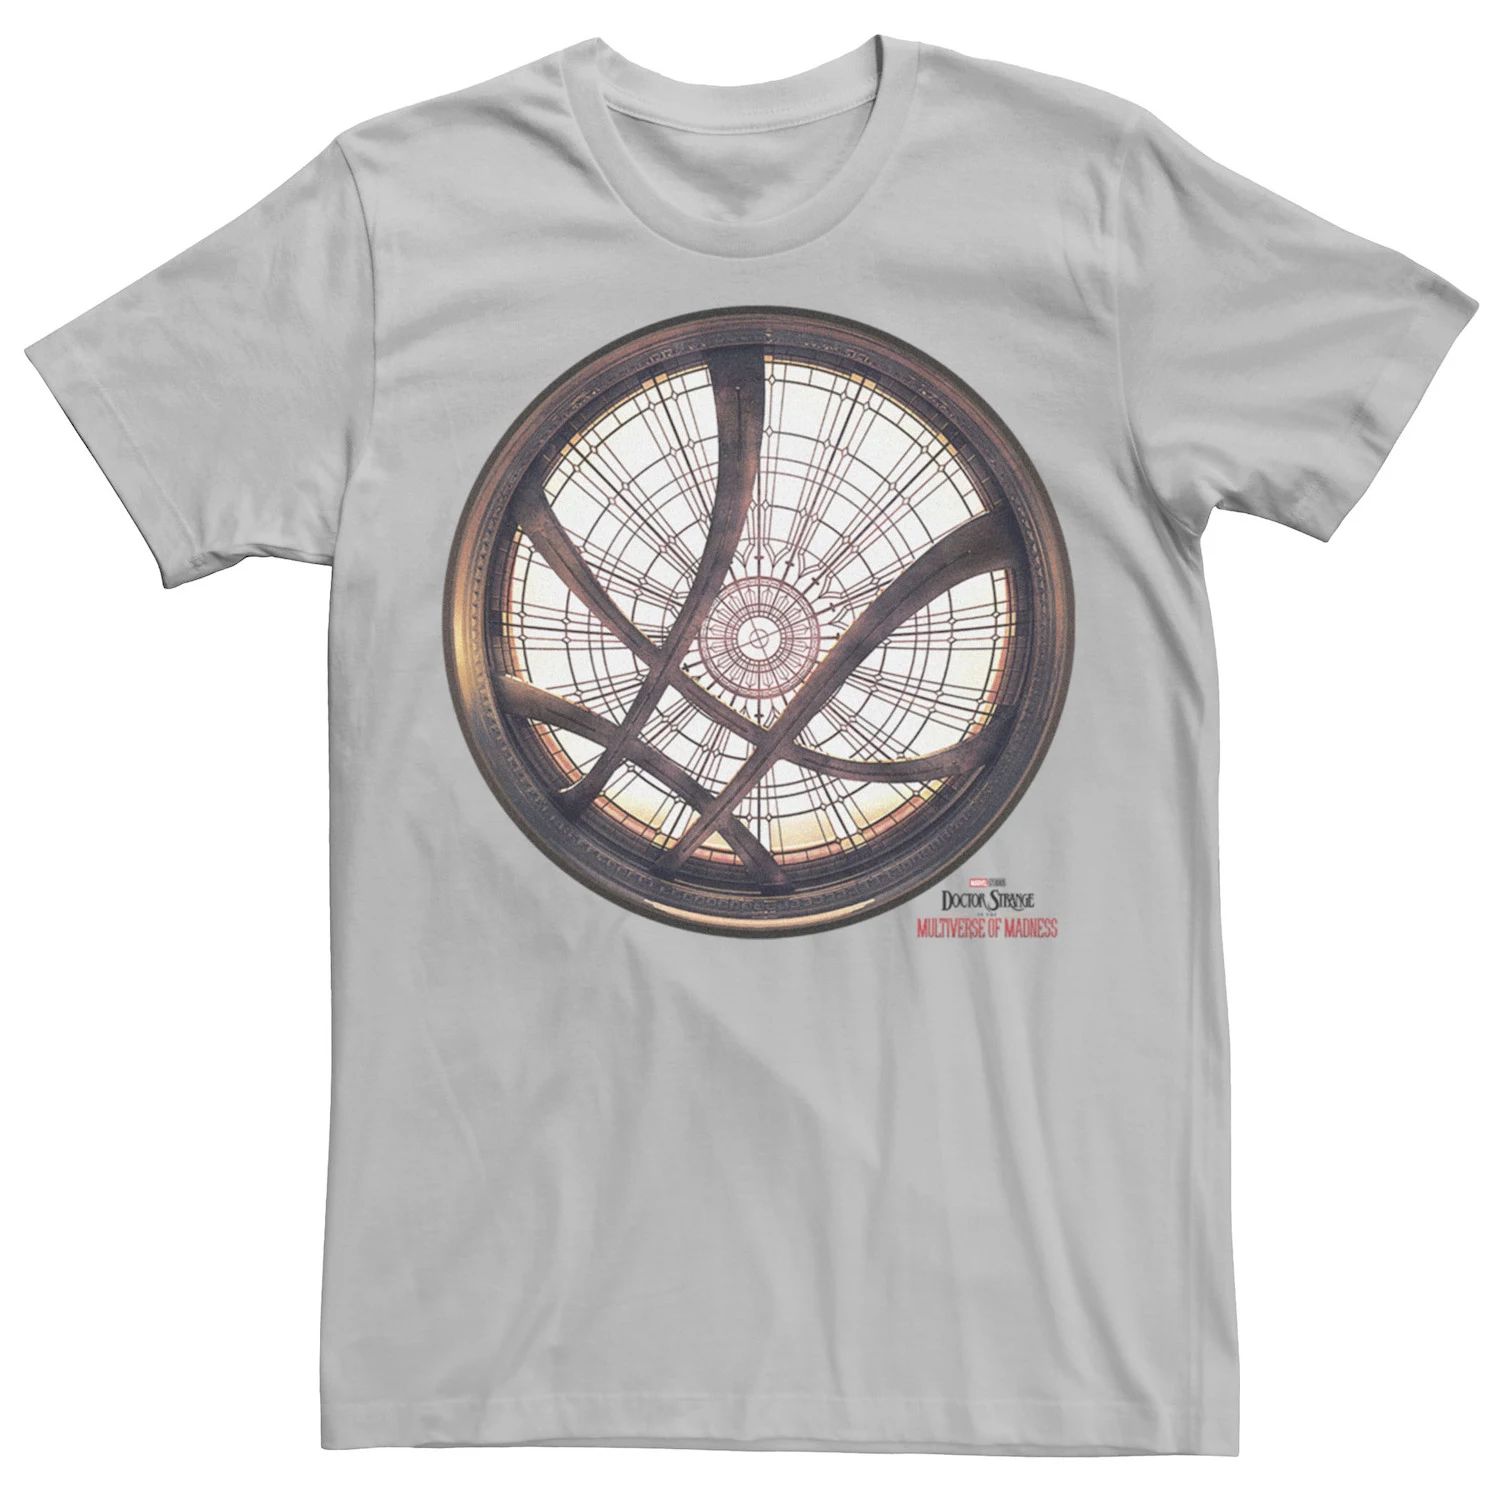 Мужская футболка с окном Marvel Doctor Strange Movie 2 Sanctum Sanctorum Licensed Character